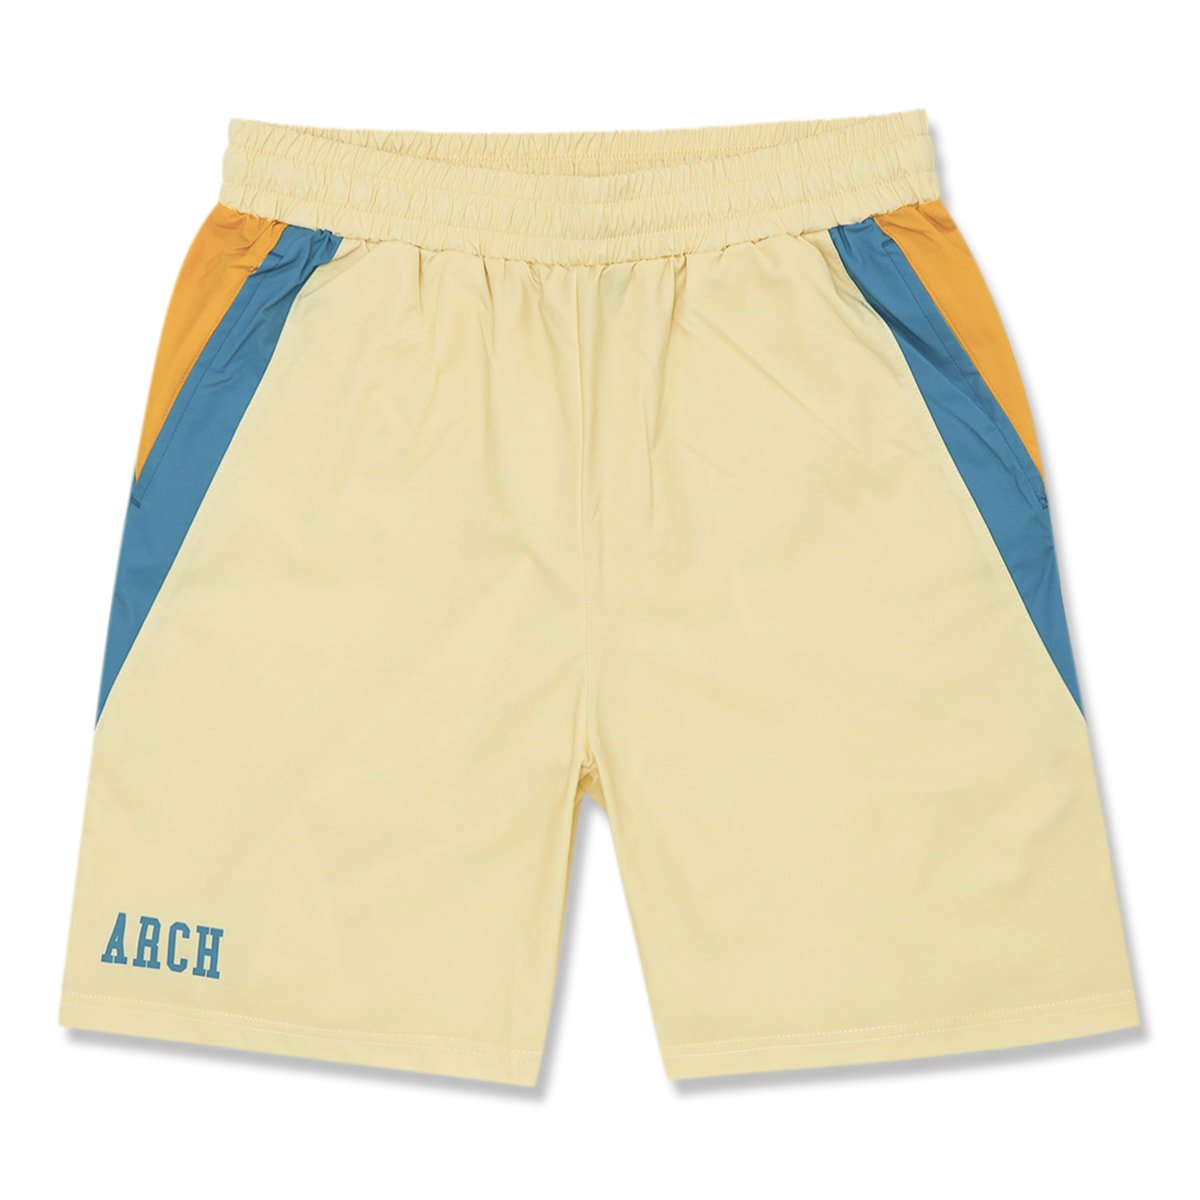 side colors shorts【vanilla】 - Arch ☆ アーチ [バスケットボール 